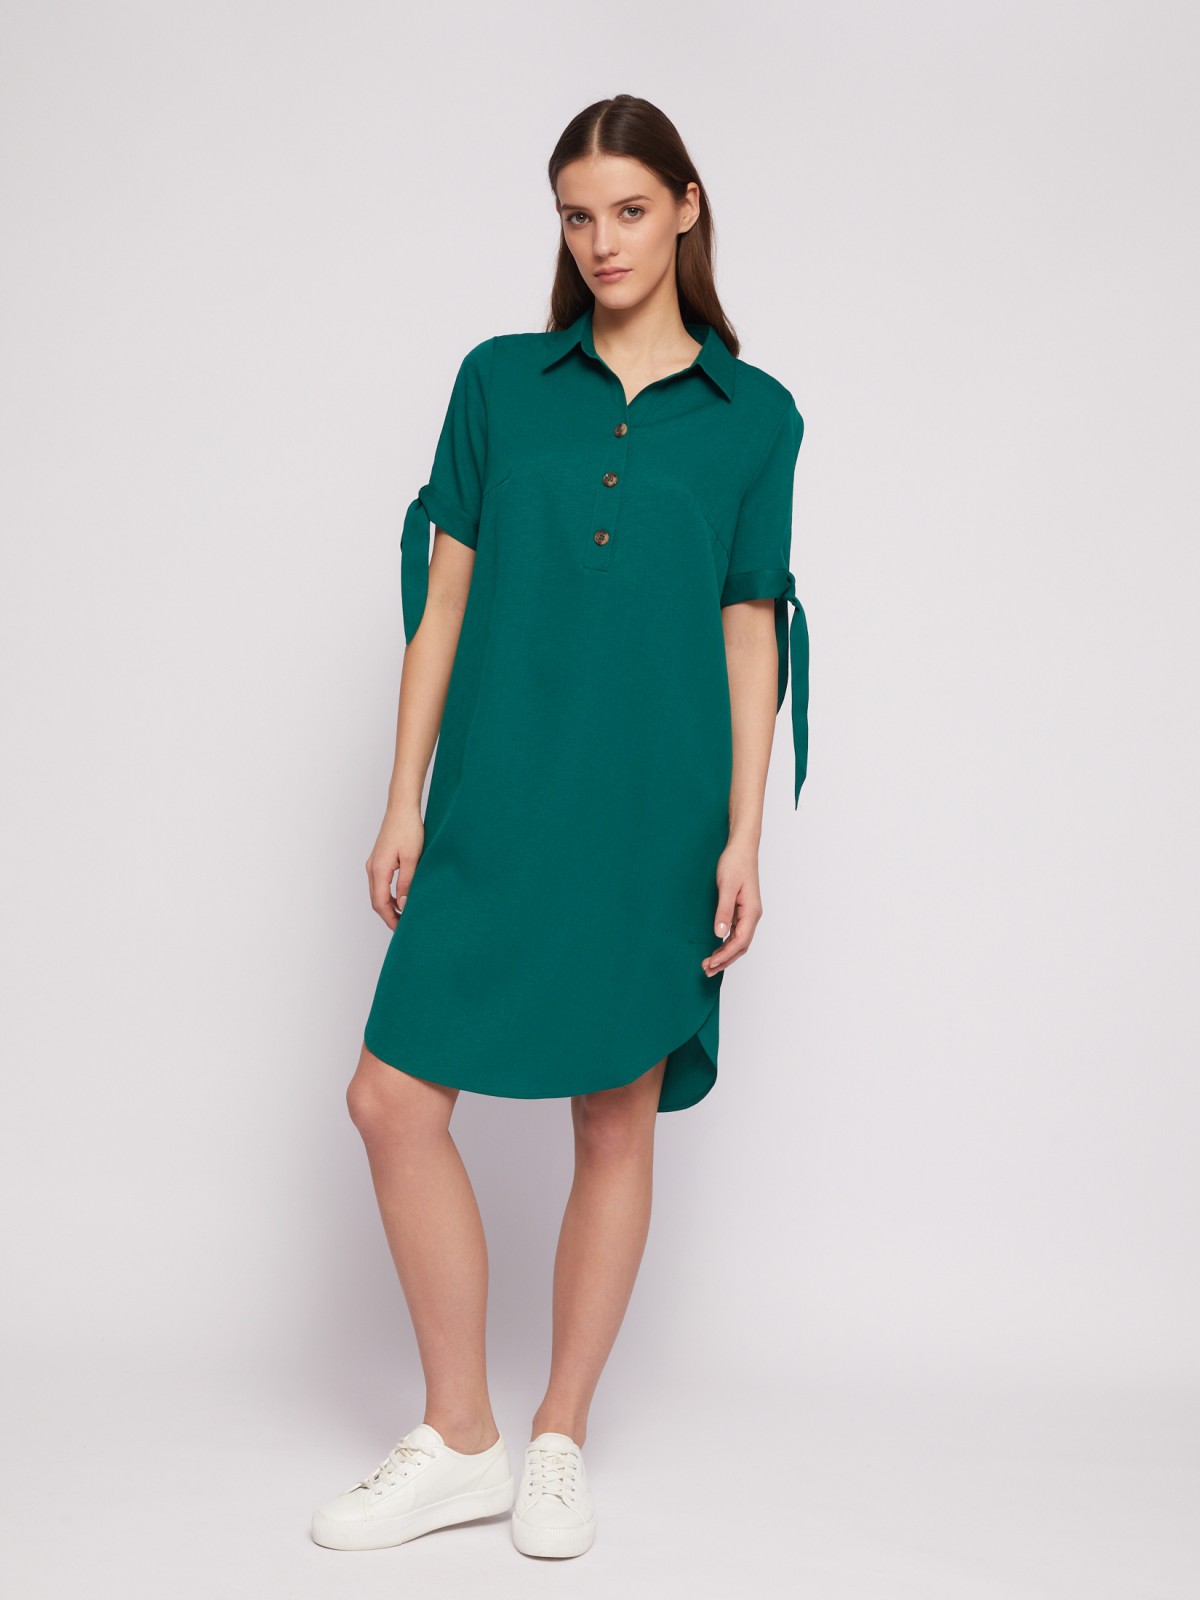 Платье-рубашка мини с акцентом на рукавах zolla 024218239333, цвет темно-зеленый, размер XXXL - фото 2